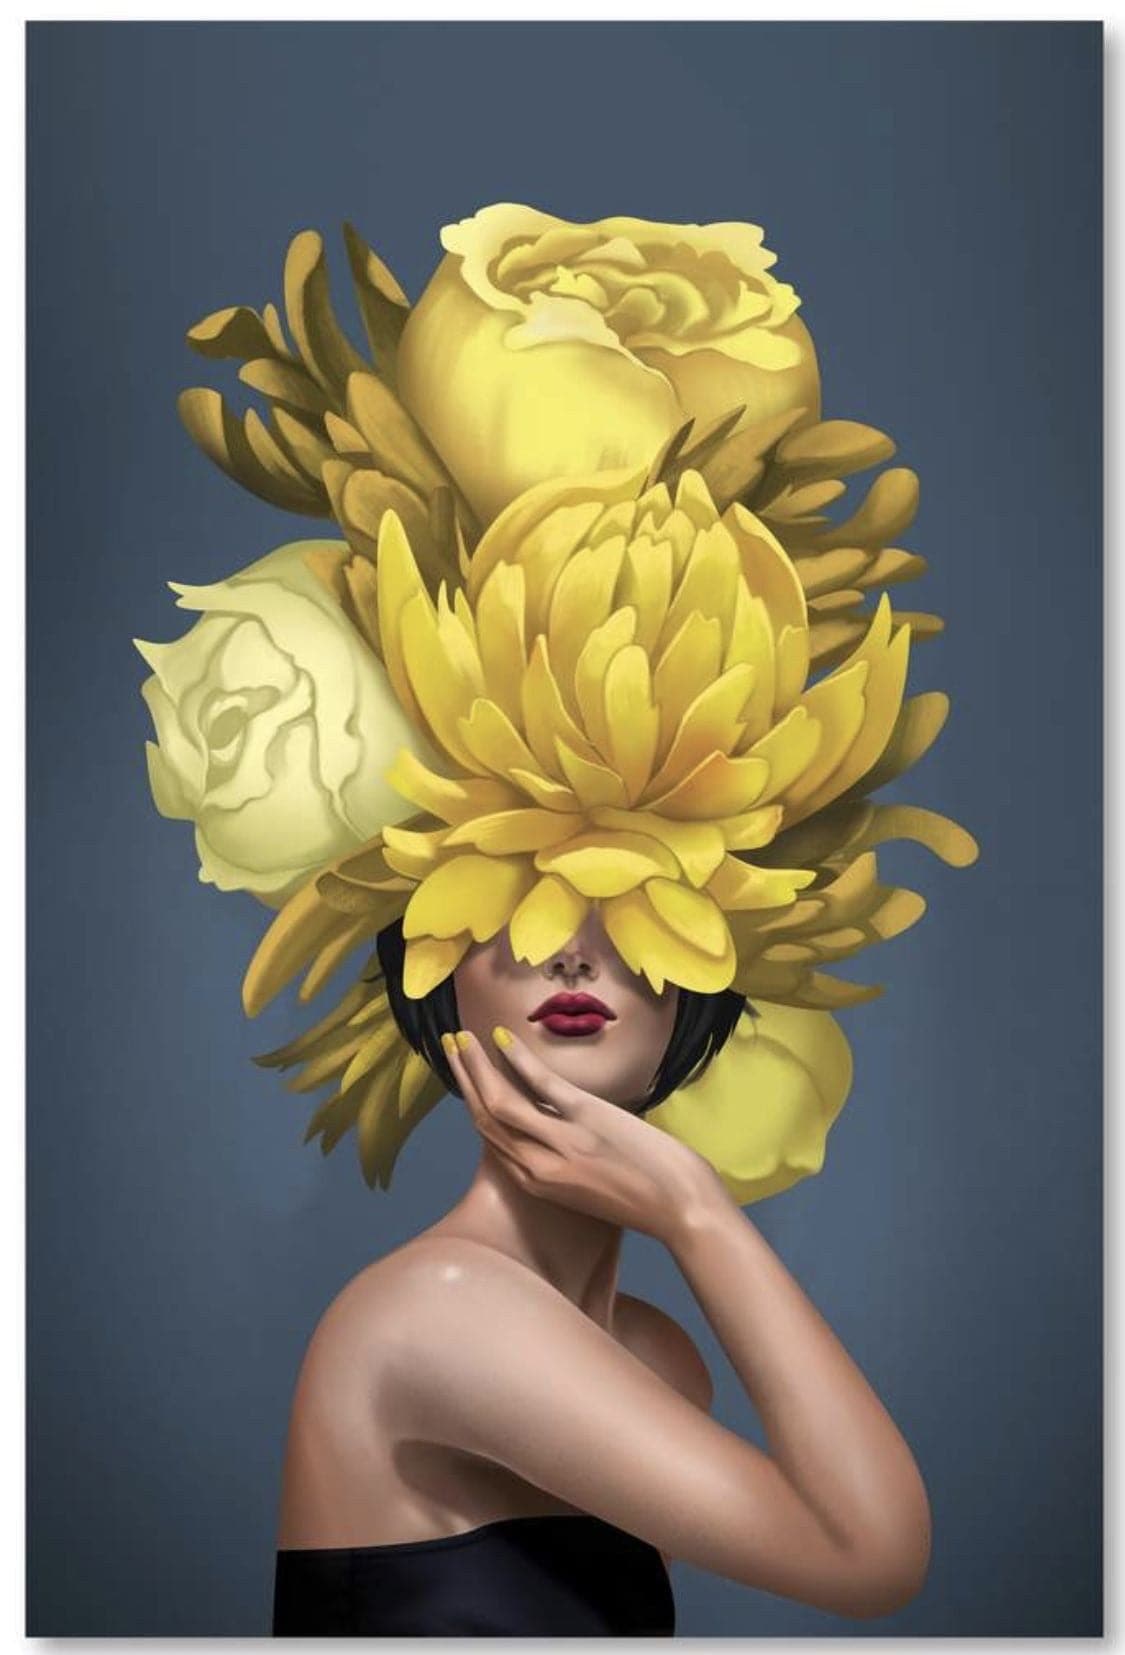 A Yellow flower girl